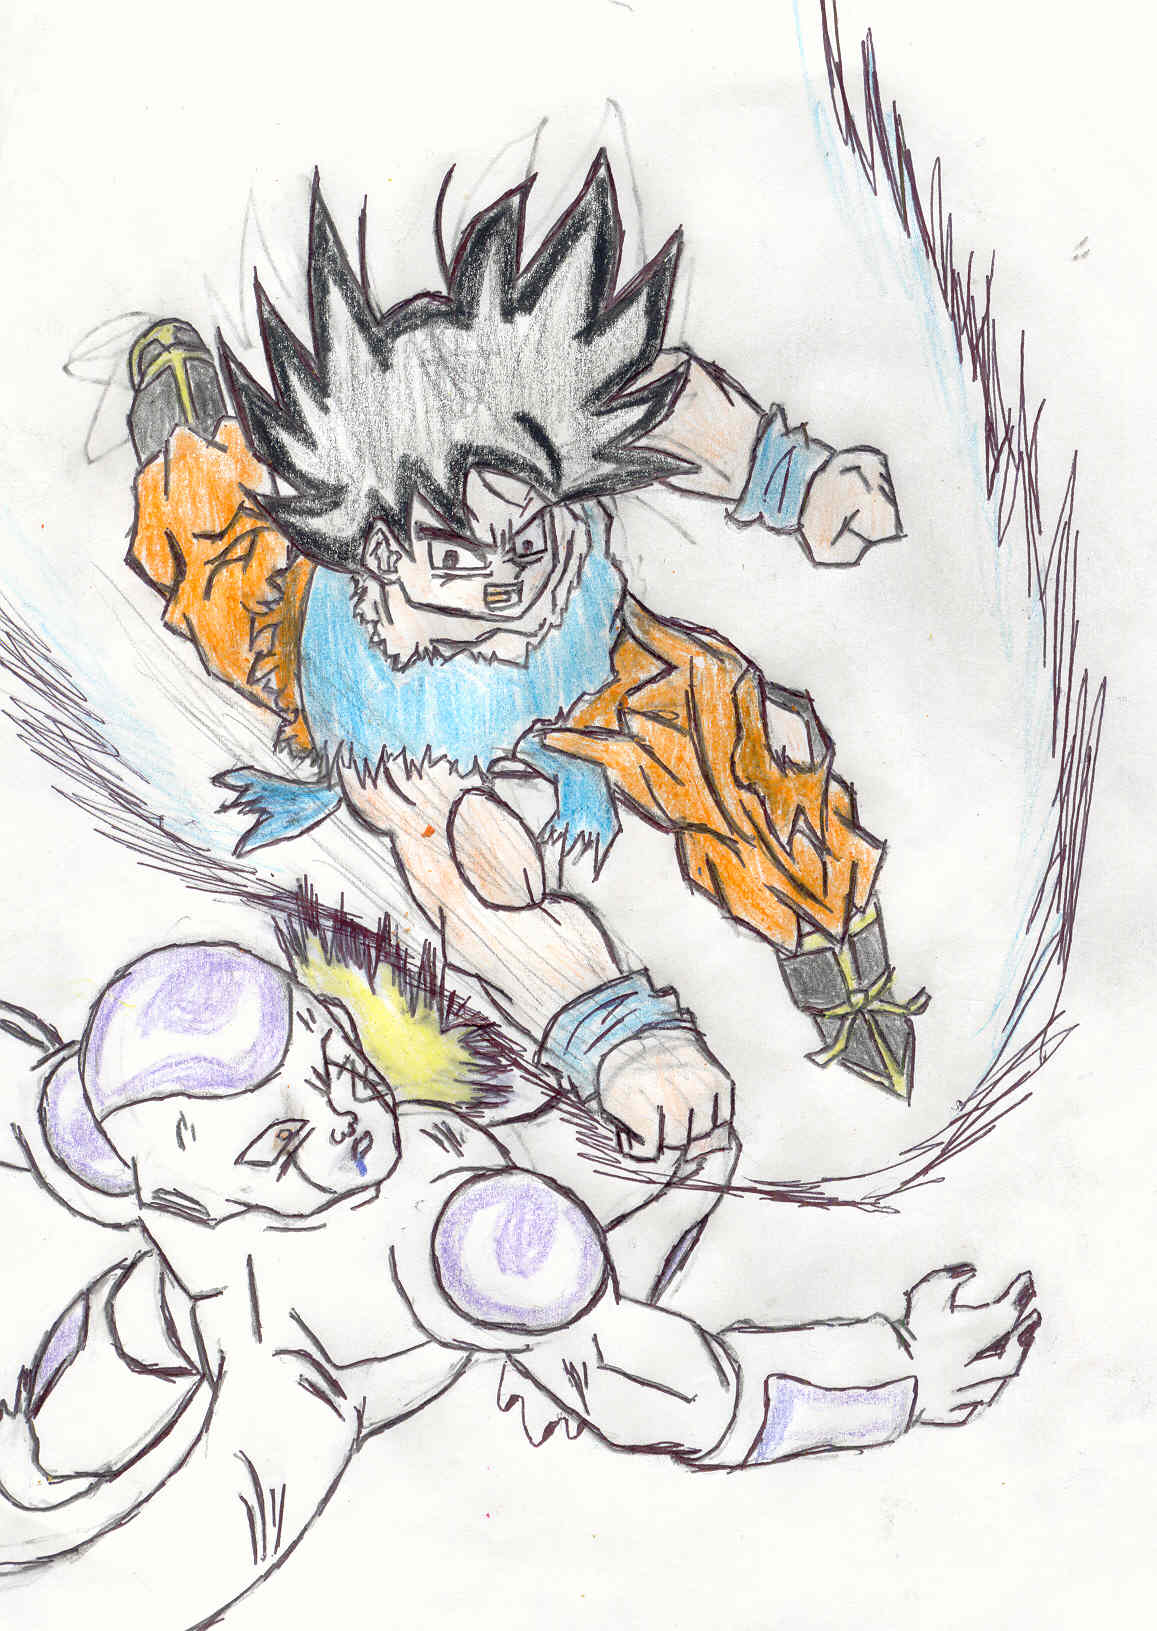 A tribute to DBZ; Goku vs. Freiza by MageKnight007